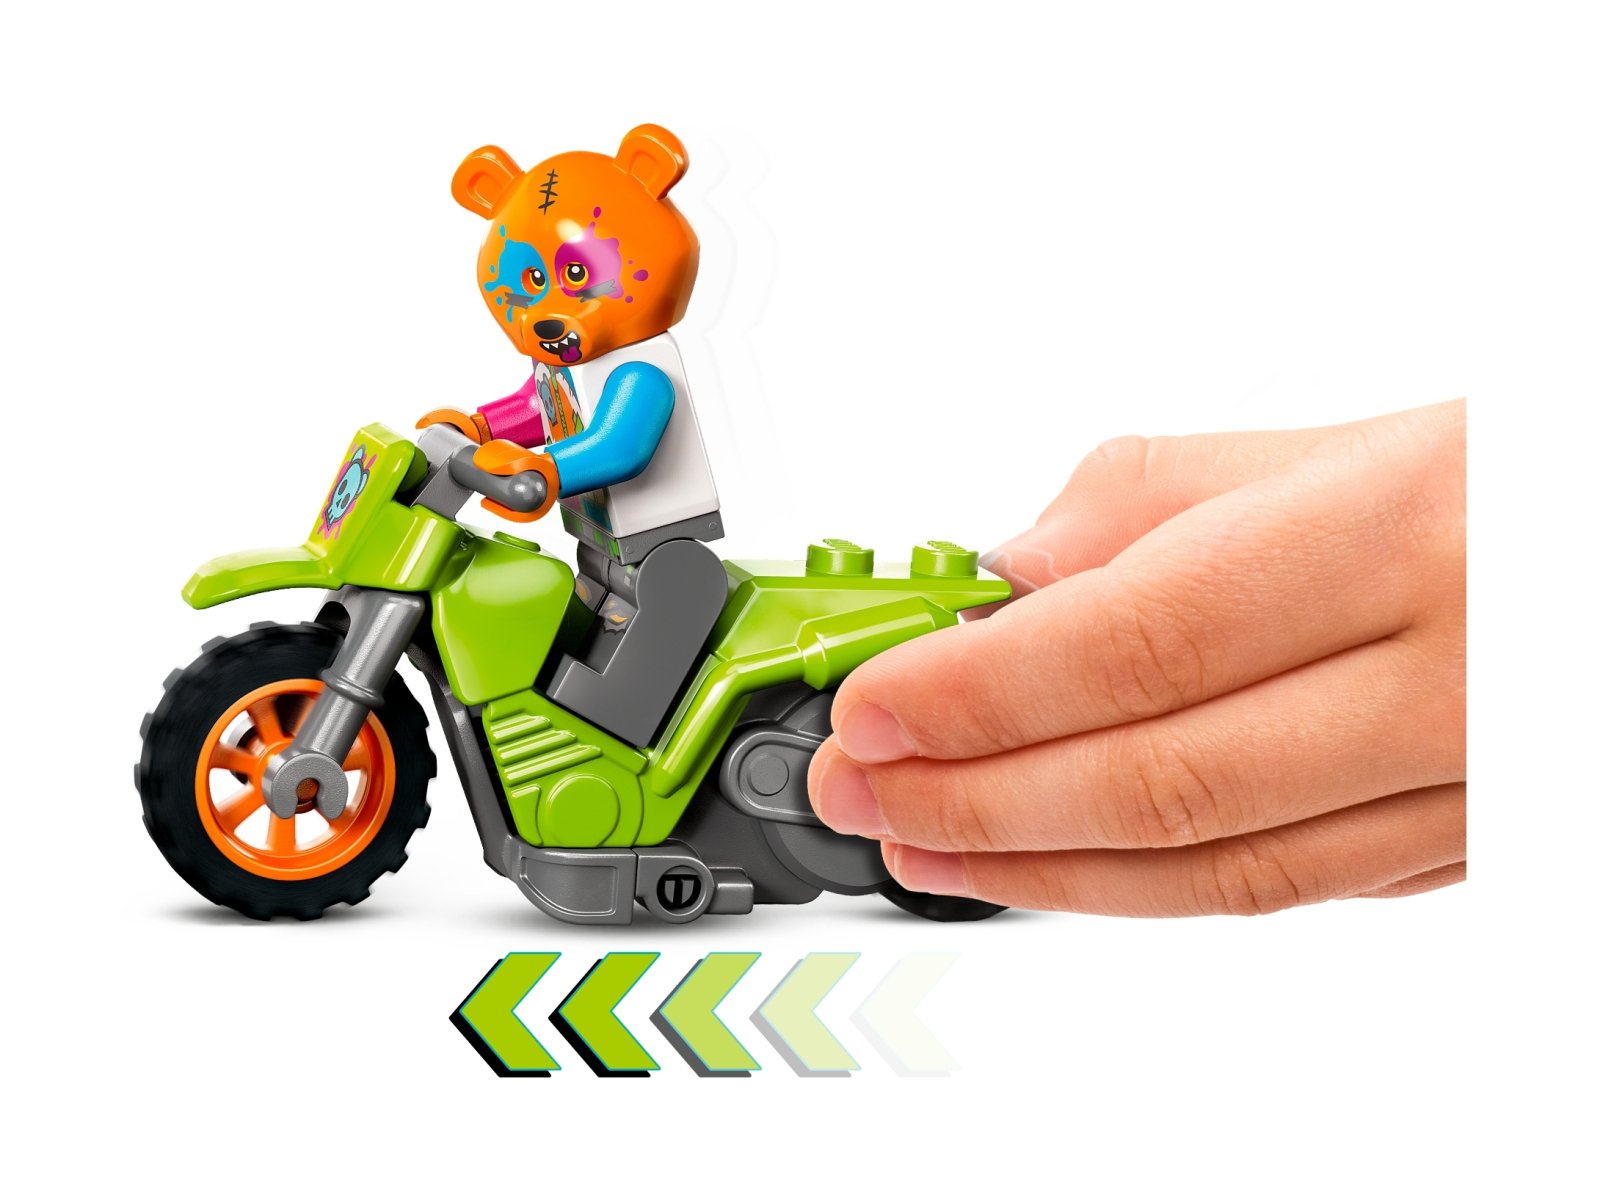 LEGO City 60356 Motocykl kaskaderski z niedźwiedziem